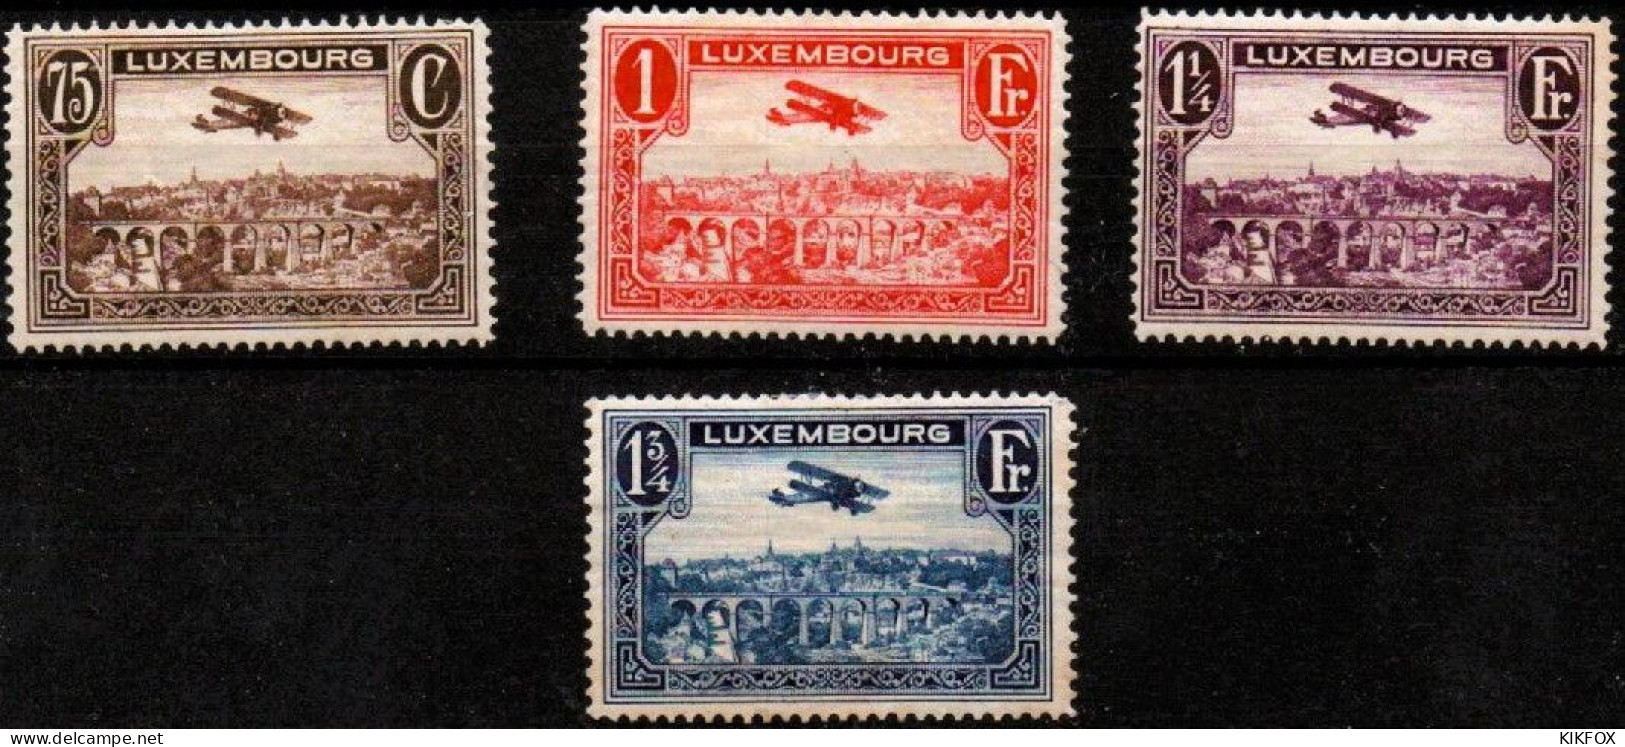 LUXEMBOURG, LUXEMBURG 1931 Mi 234 - 237 , PA 1 - 4  Flugpost , BREGUET-DOPPELDECKER, UNGEBRAUCHT, CHARNIERES * - Nuovi